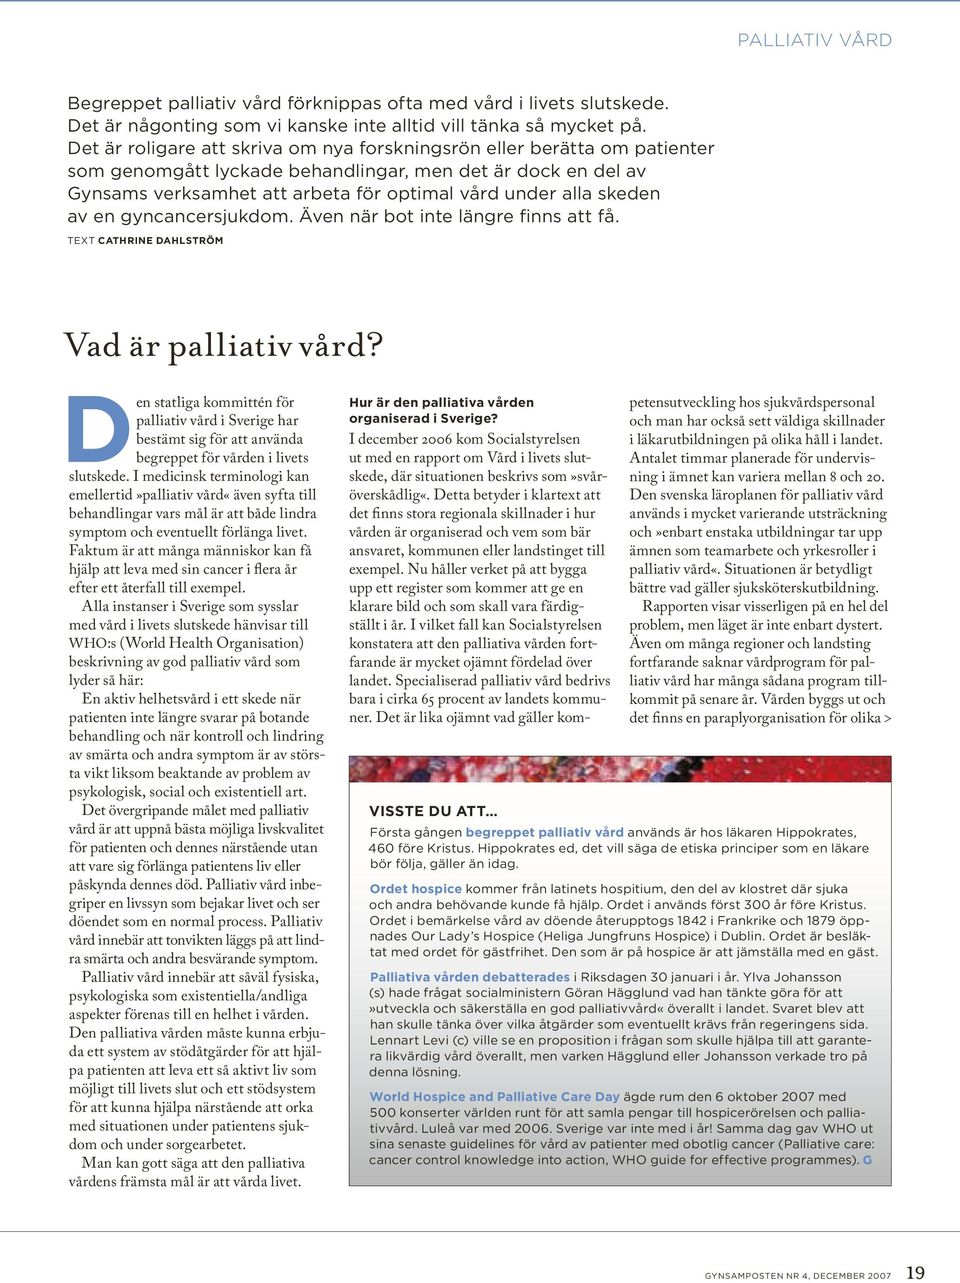 skeden av en gyncancersjukdom. Även när bot inte längre finns att få. Text Cathrine Dahlström Vad är palliativ vård?